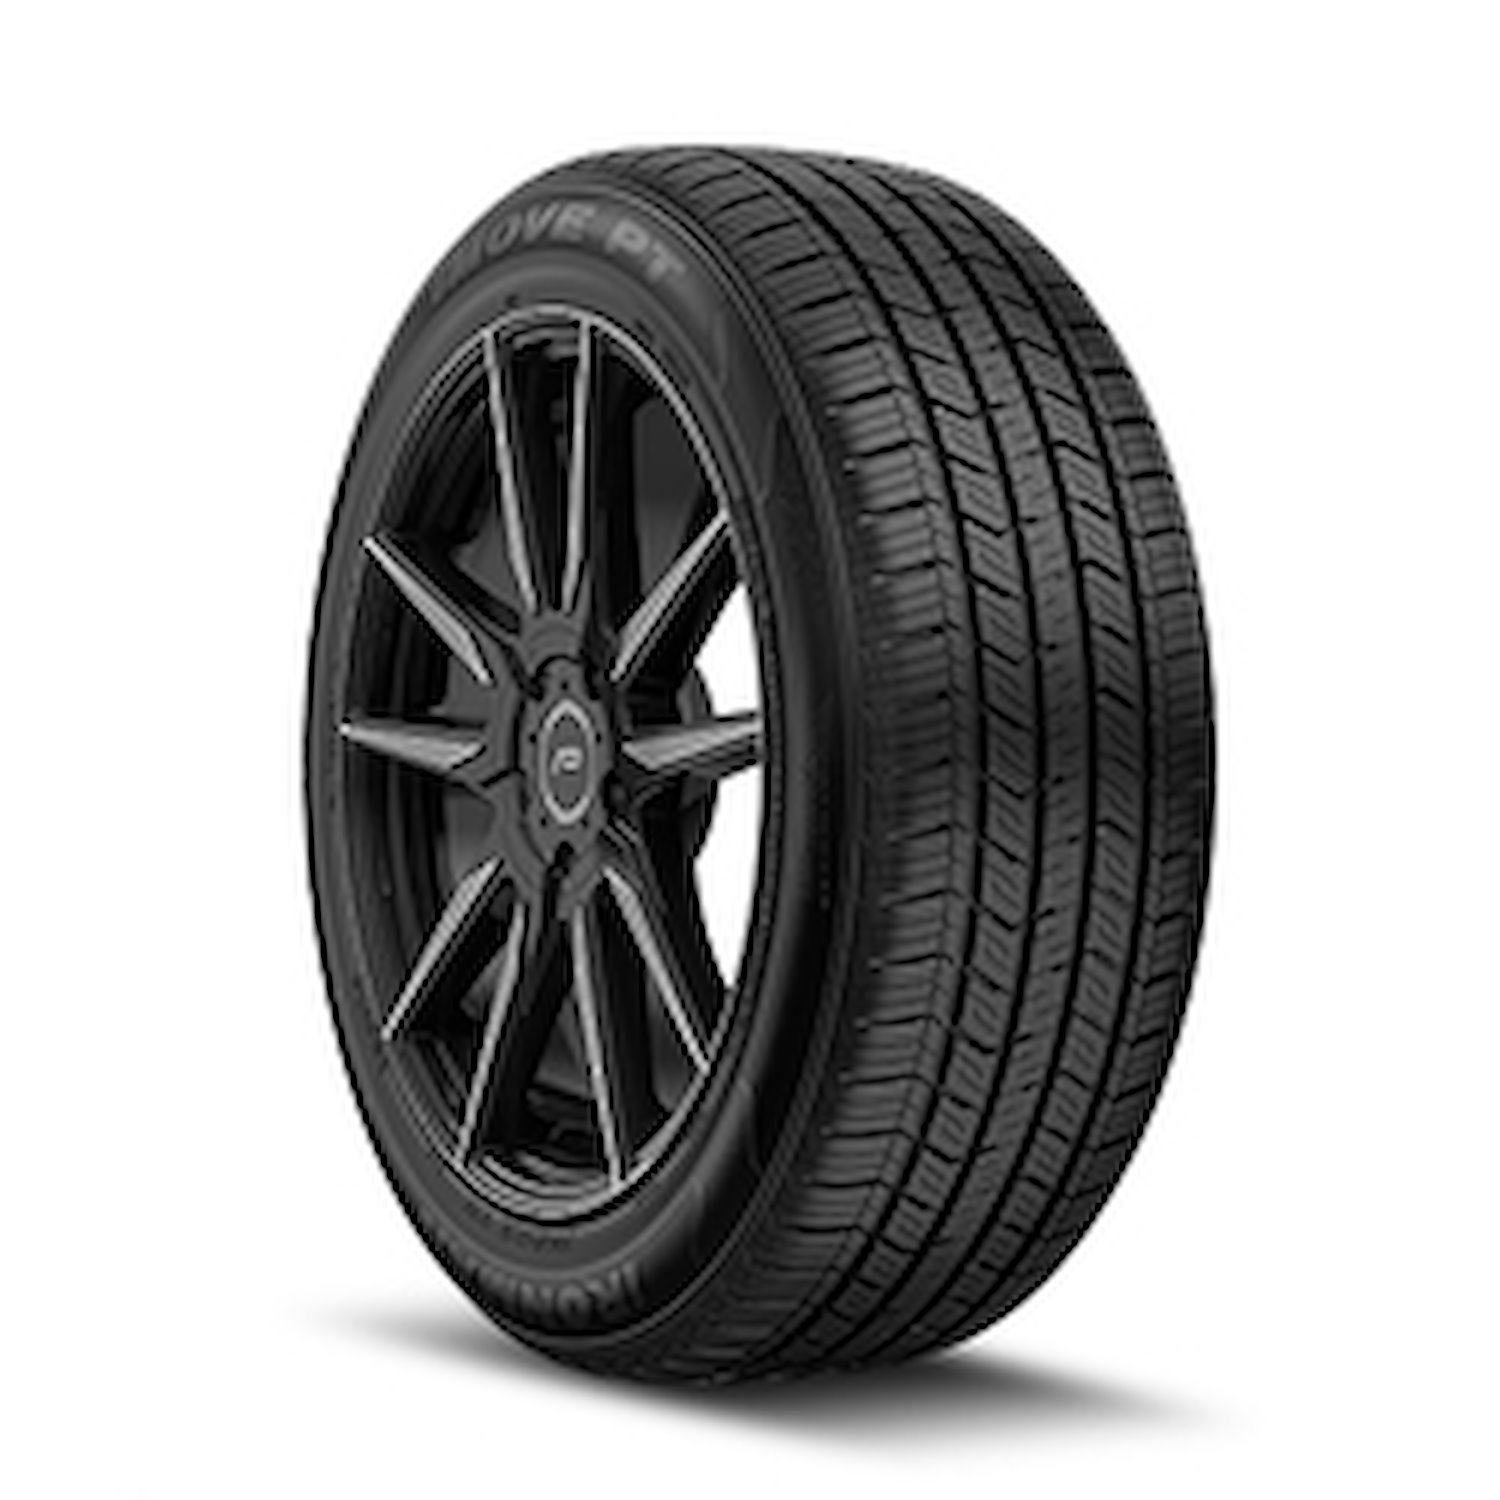 98462 iMOVE PT Tire, 215/65R16, 98H